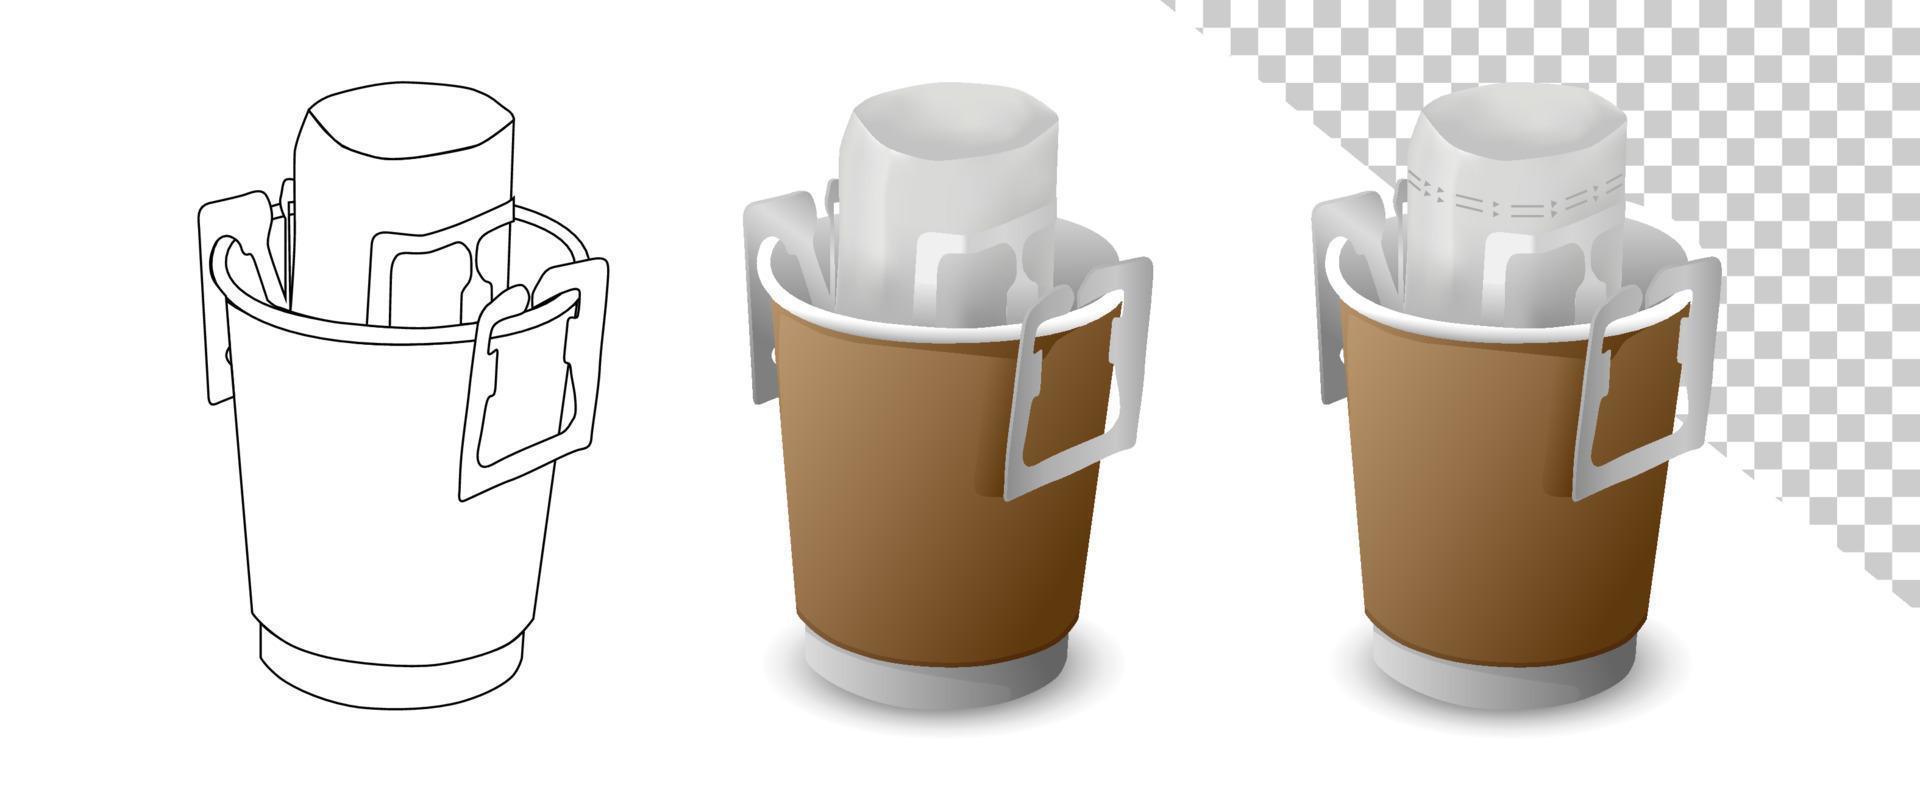 goteo de café con vector de bolsa de goteo portátil sobre fondo blanco. taza artesanal con bolsa de café en taza.